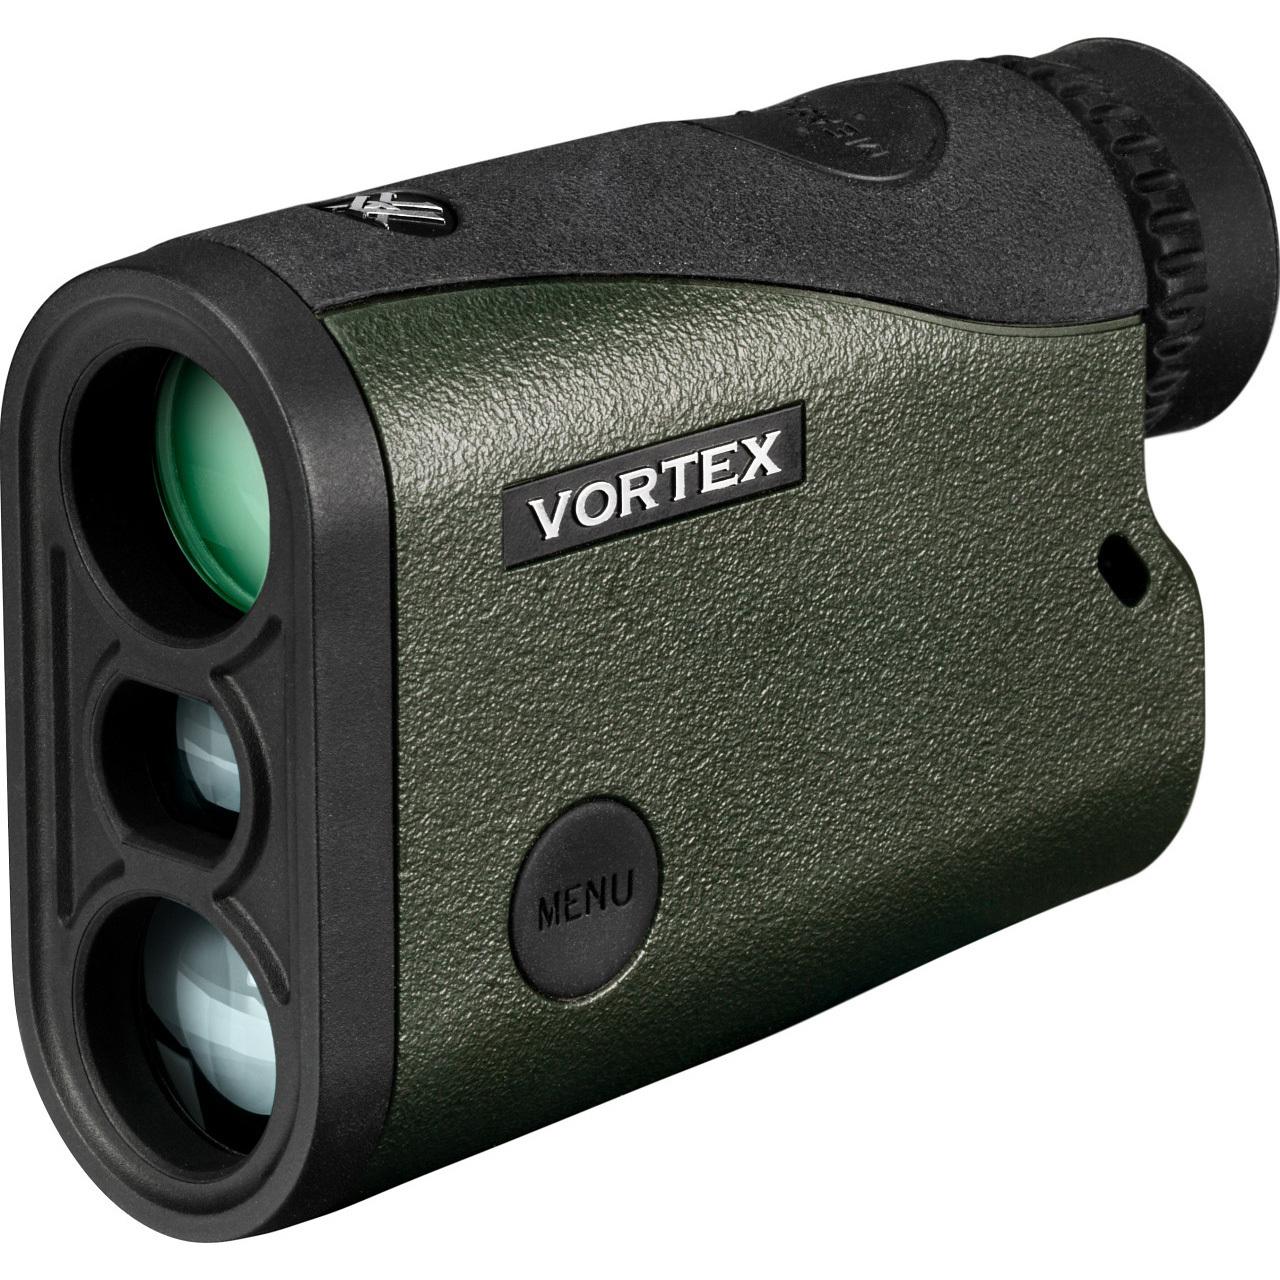 Preorder - Vortex Optics Crossfire HD 1400 Laser Rangefinder - $169.99 after code "SAVE30" (Free S/H)